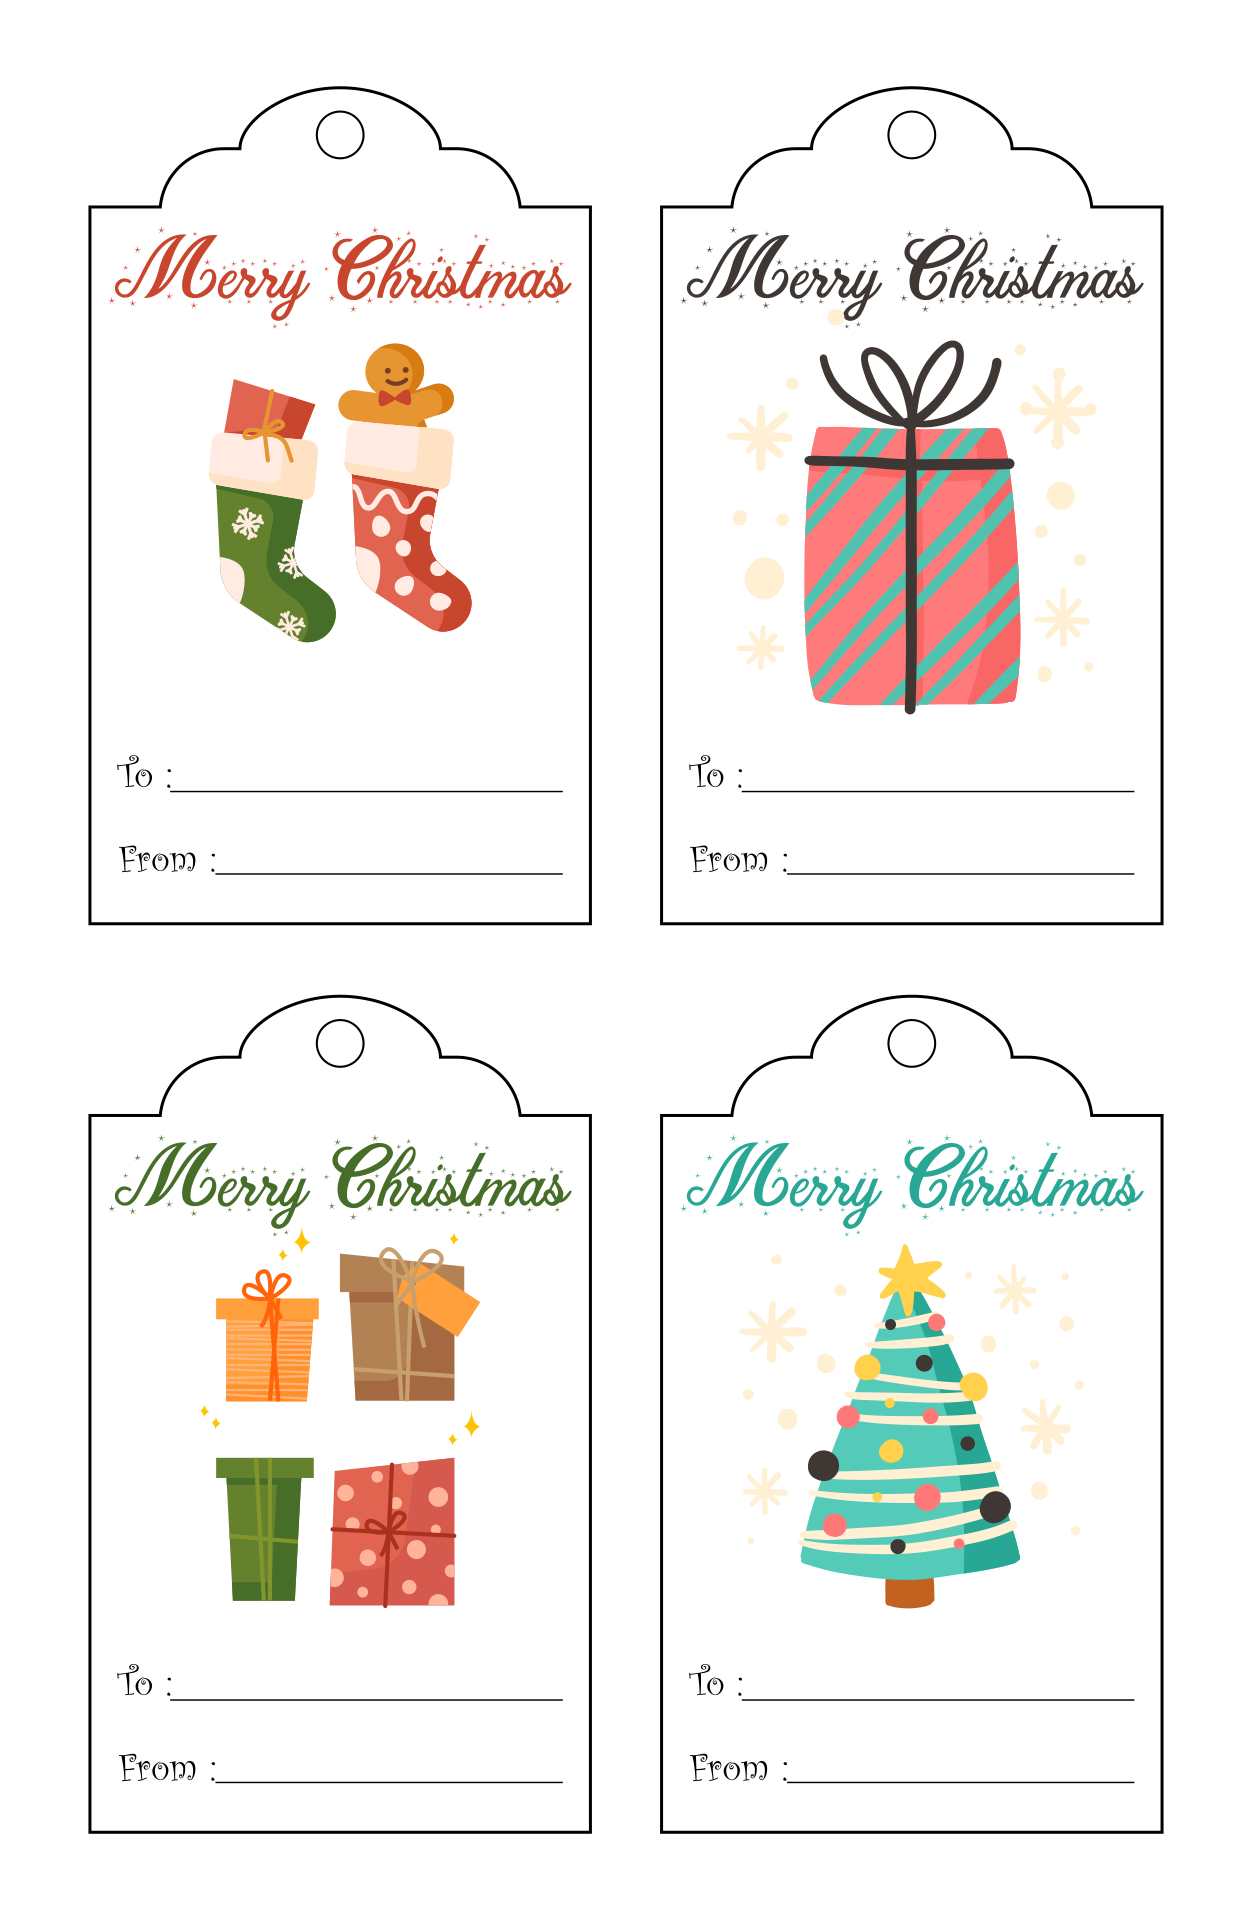 Printable Holiday Gift Tags Template Printable Templates